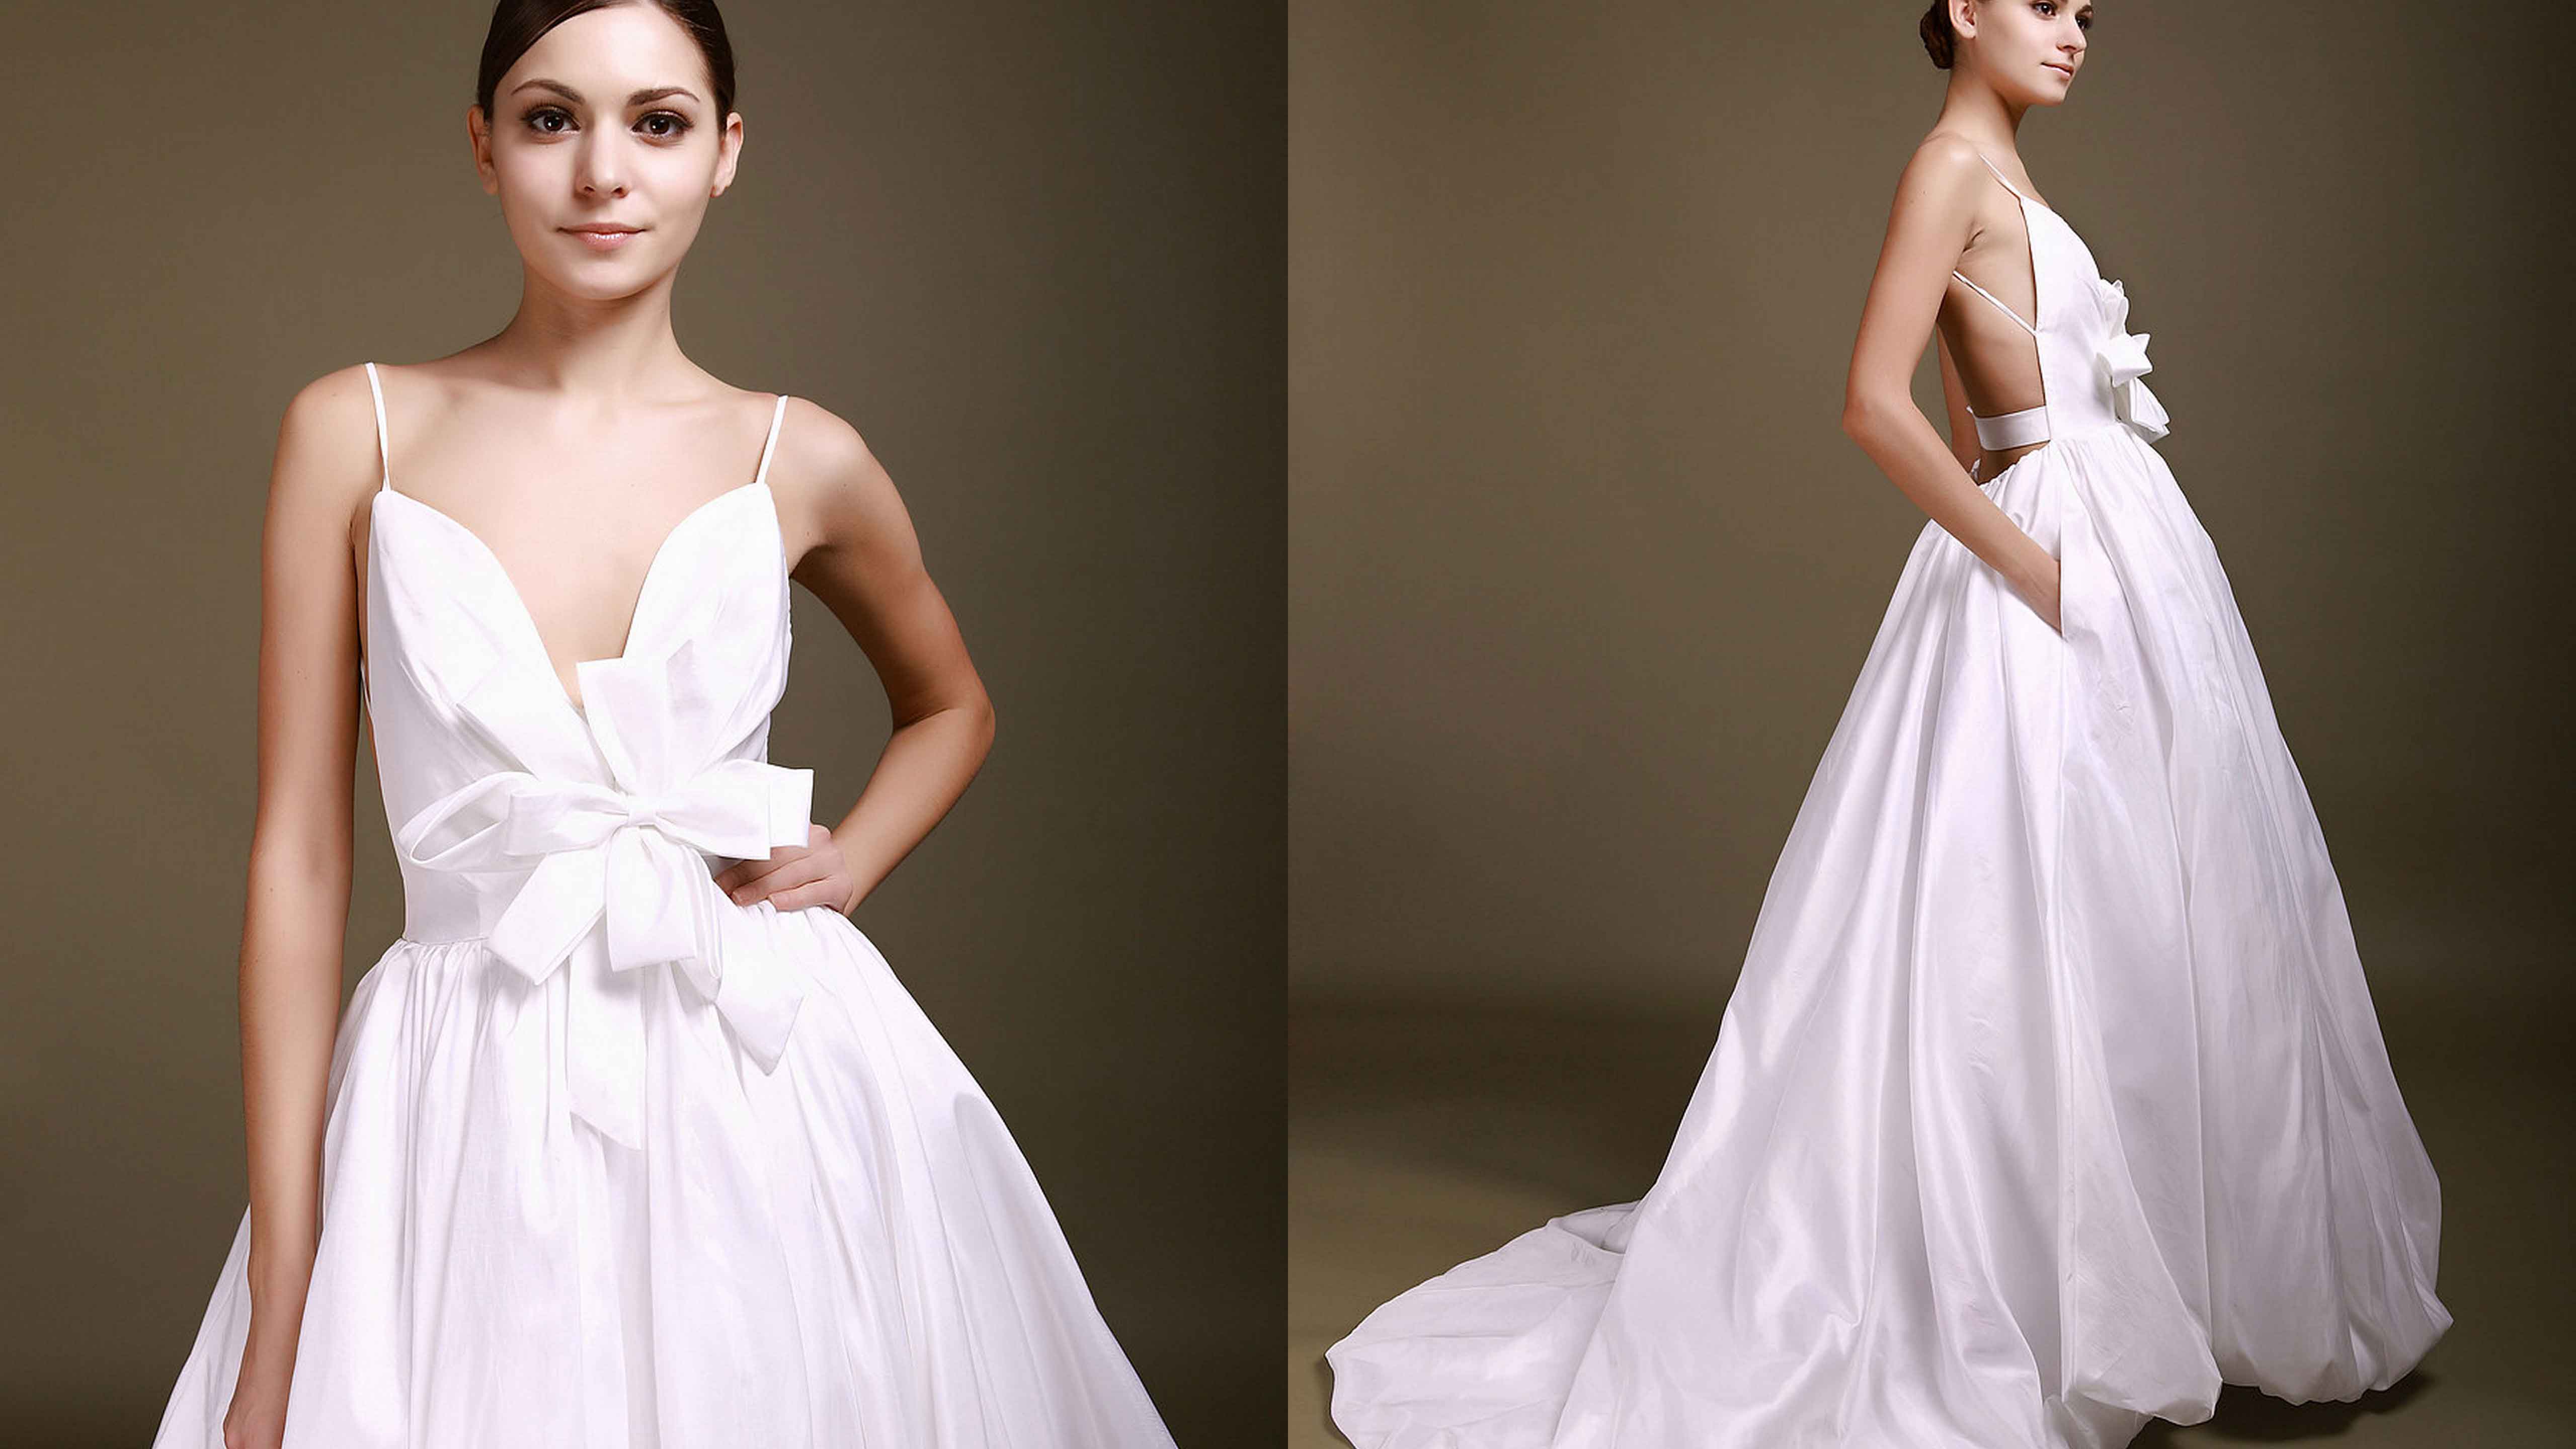 Váy cưới màu trắng hở lưng, hoa nổi 3D tuyệt đẹp